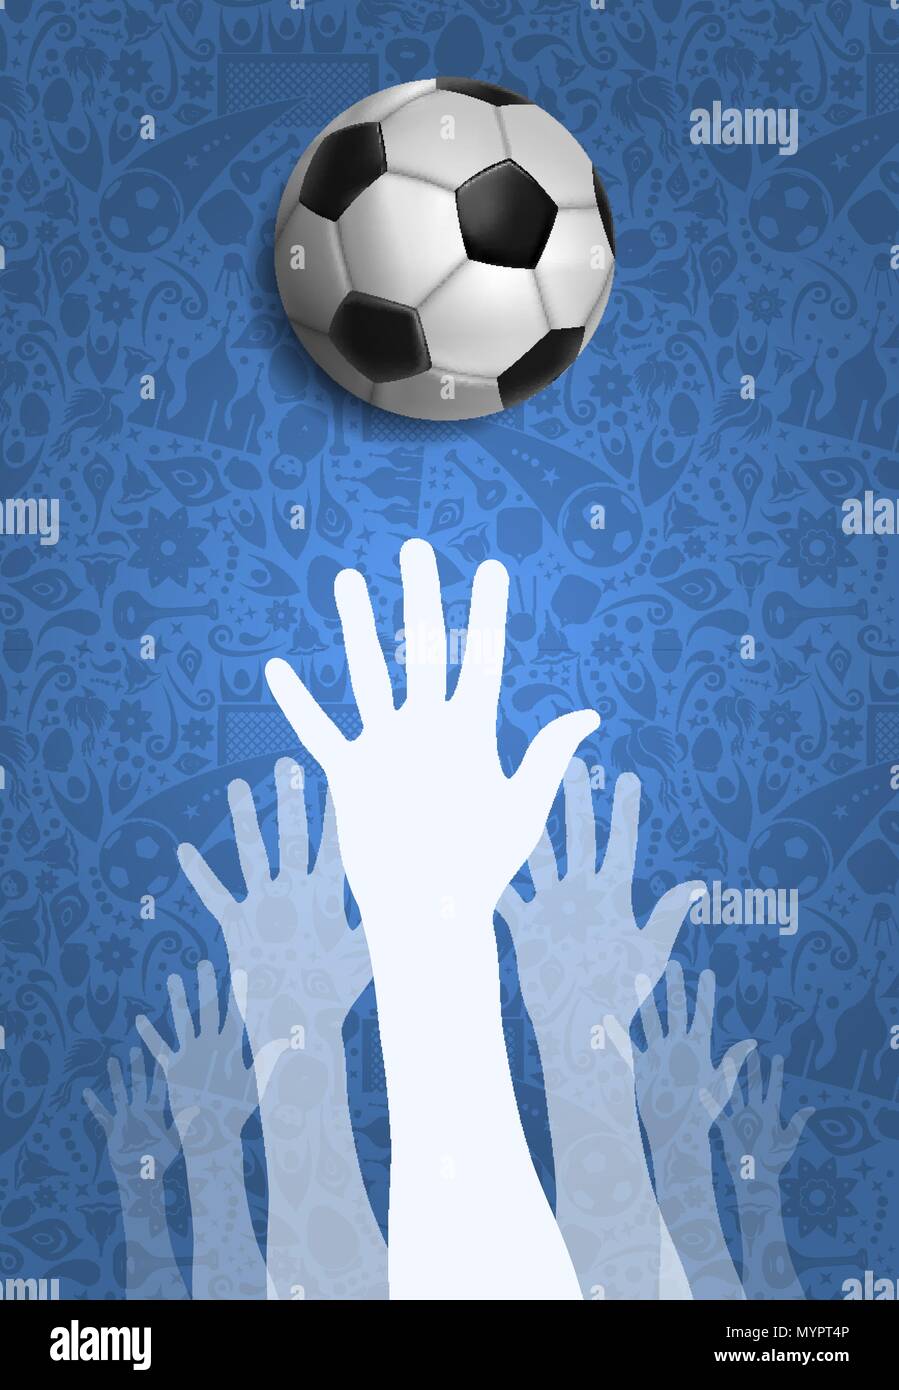 Fußball-Event Abbildung, Russisch sport spiel Hintergrund mit Menschen Hand und Fuß ball. United Gemeinschaft für Sport. EPS 10 Vektor. Stock Vektor